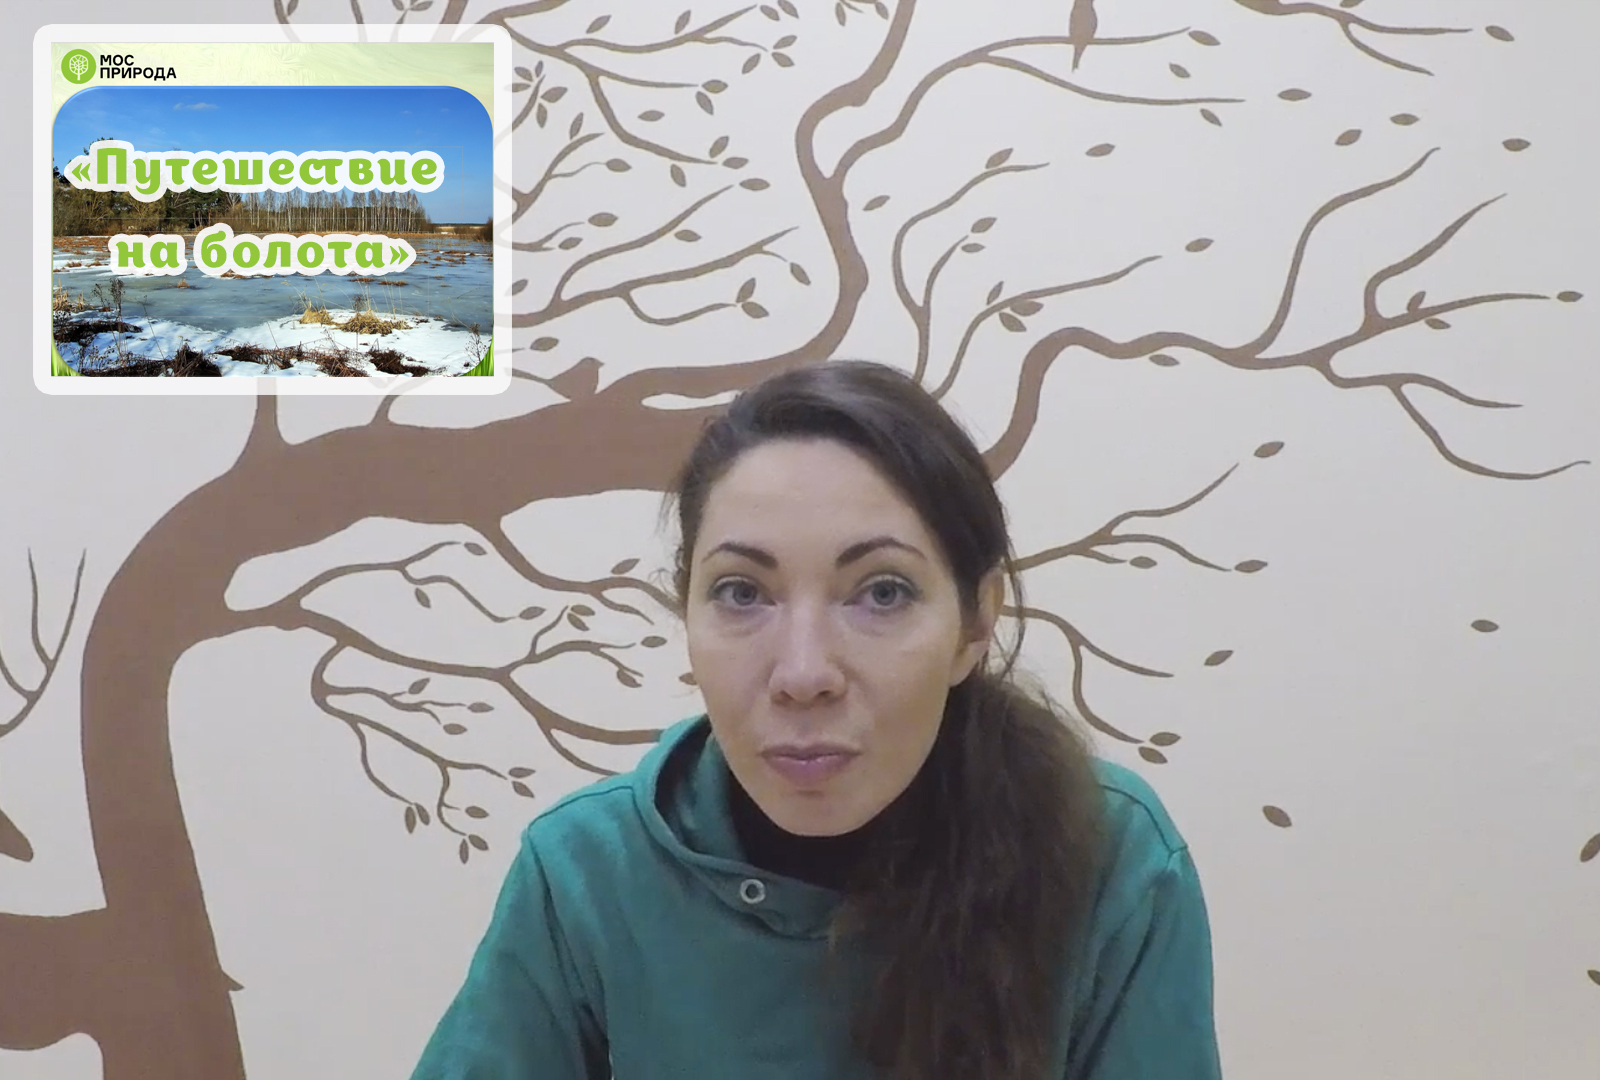 Онлайн-путешествие на болота: Мосприрода подготовила эколого-просветительскую видеолекцию  - фото 1